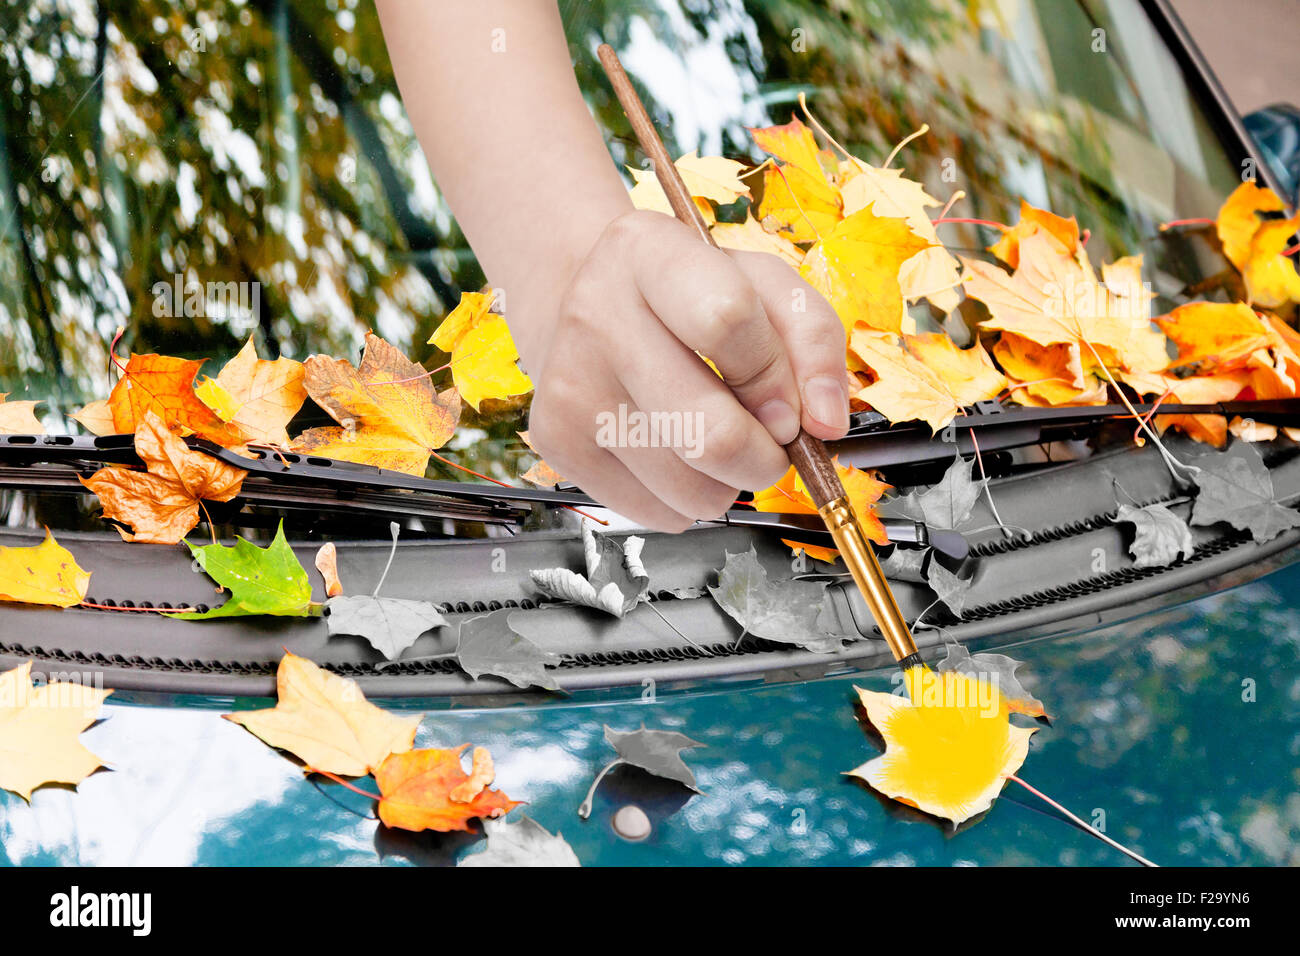 Natur-Konzept - Hand mit Pinsel malt gelbe Herbstlaub auf grünes Auto Stockfoto